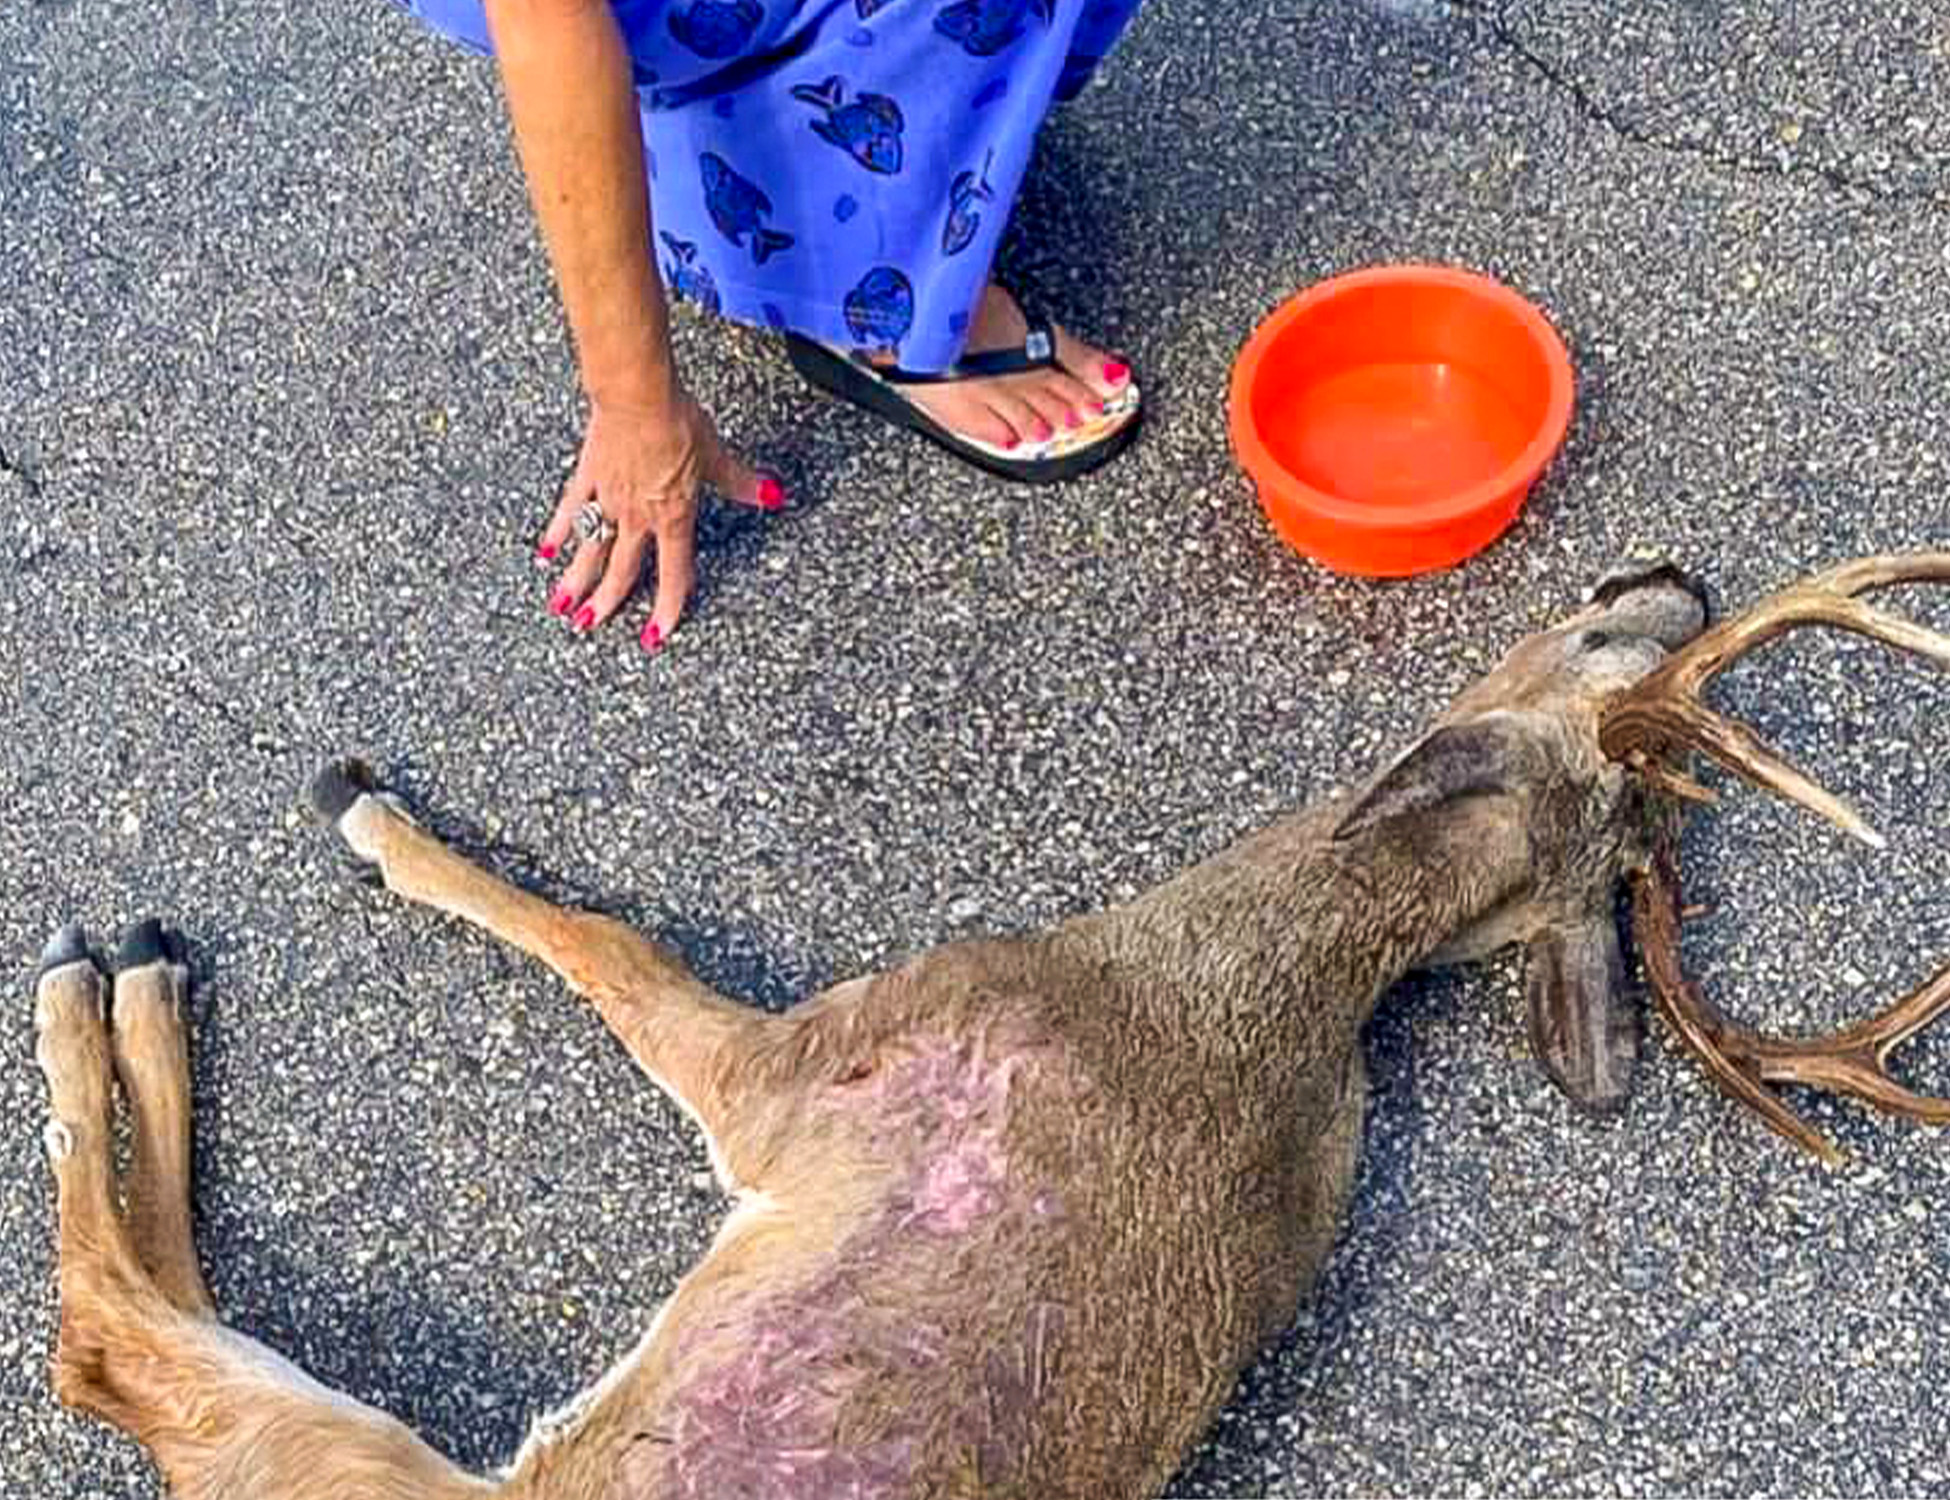 FL key deer suffering when shot